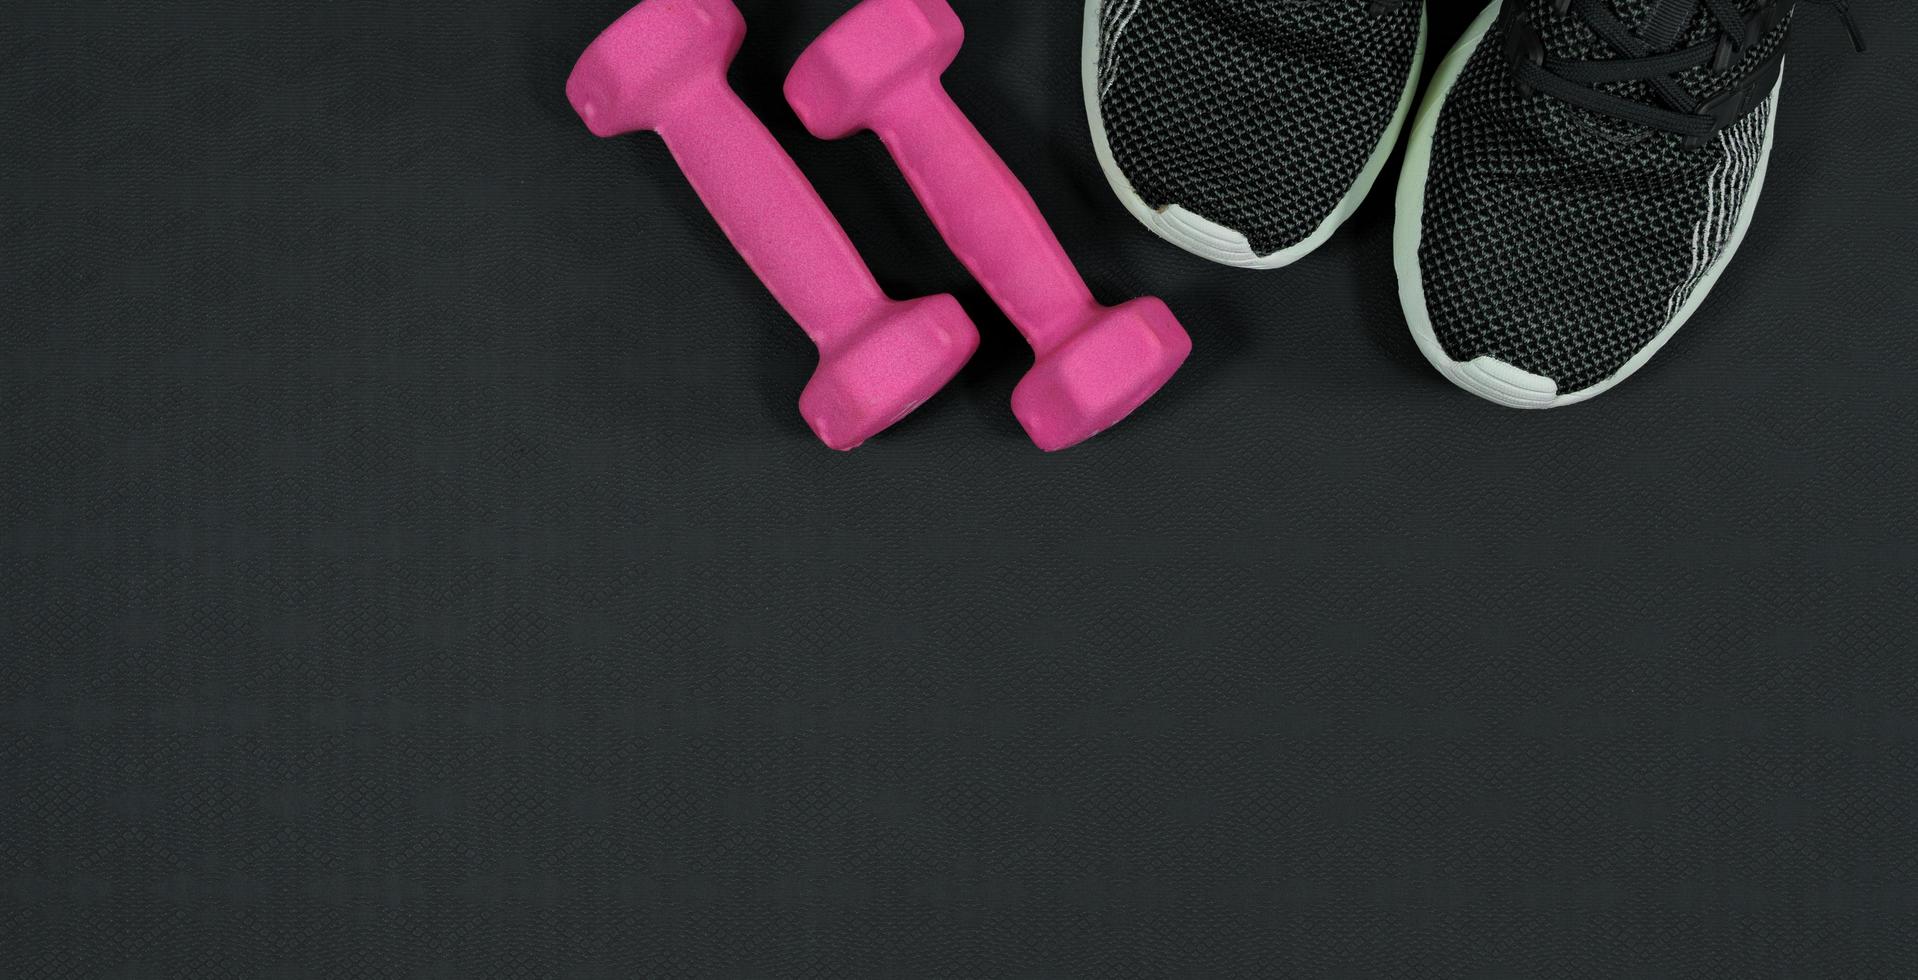 rosa manubrio e gli sport scarpa sfondo su nero gomma da cancellare background.fitness attrezzatura sfondo concetto foto